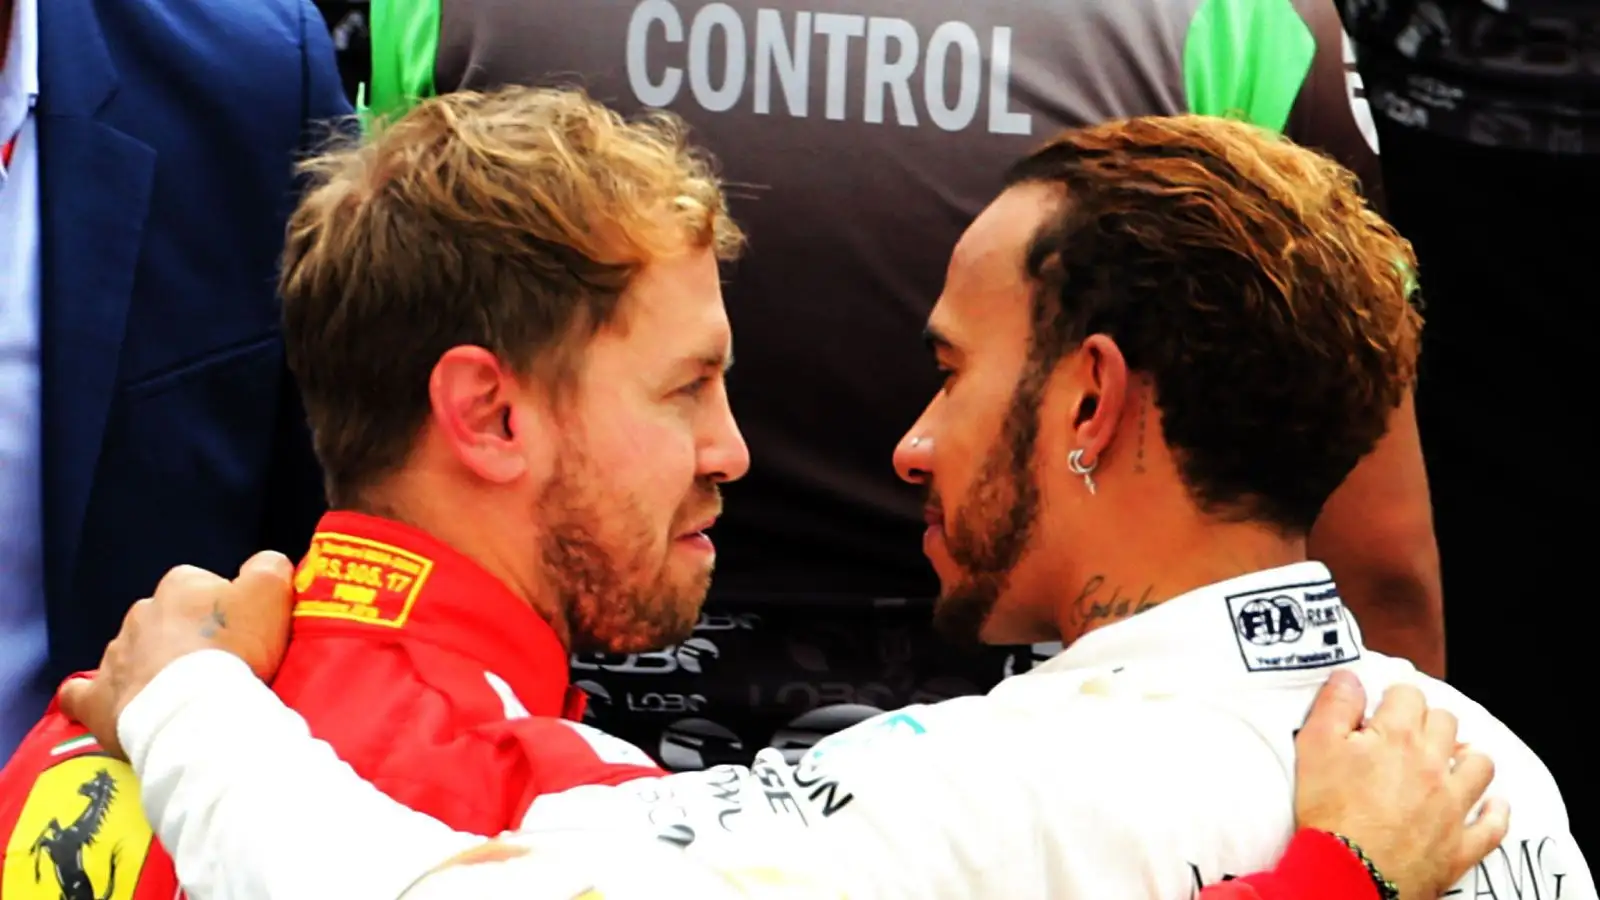 Sebastian Vettel, Ferrari and Lewis Hamilton, Mercedes